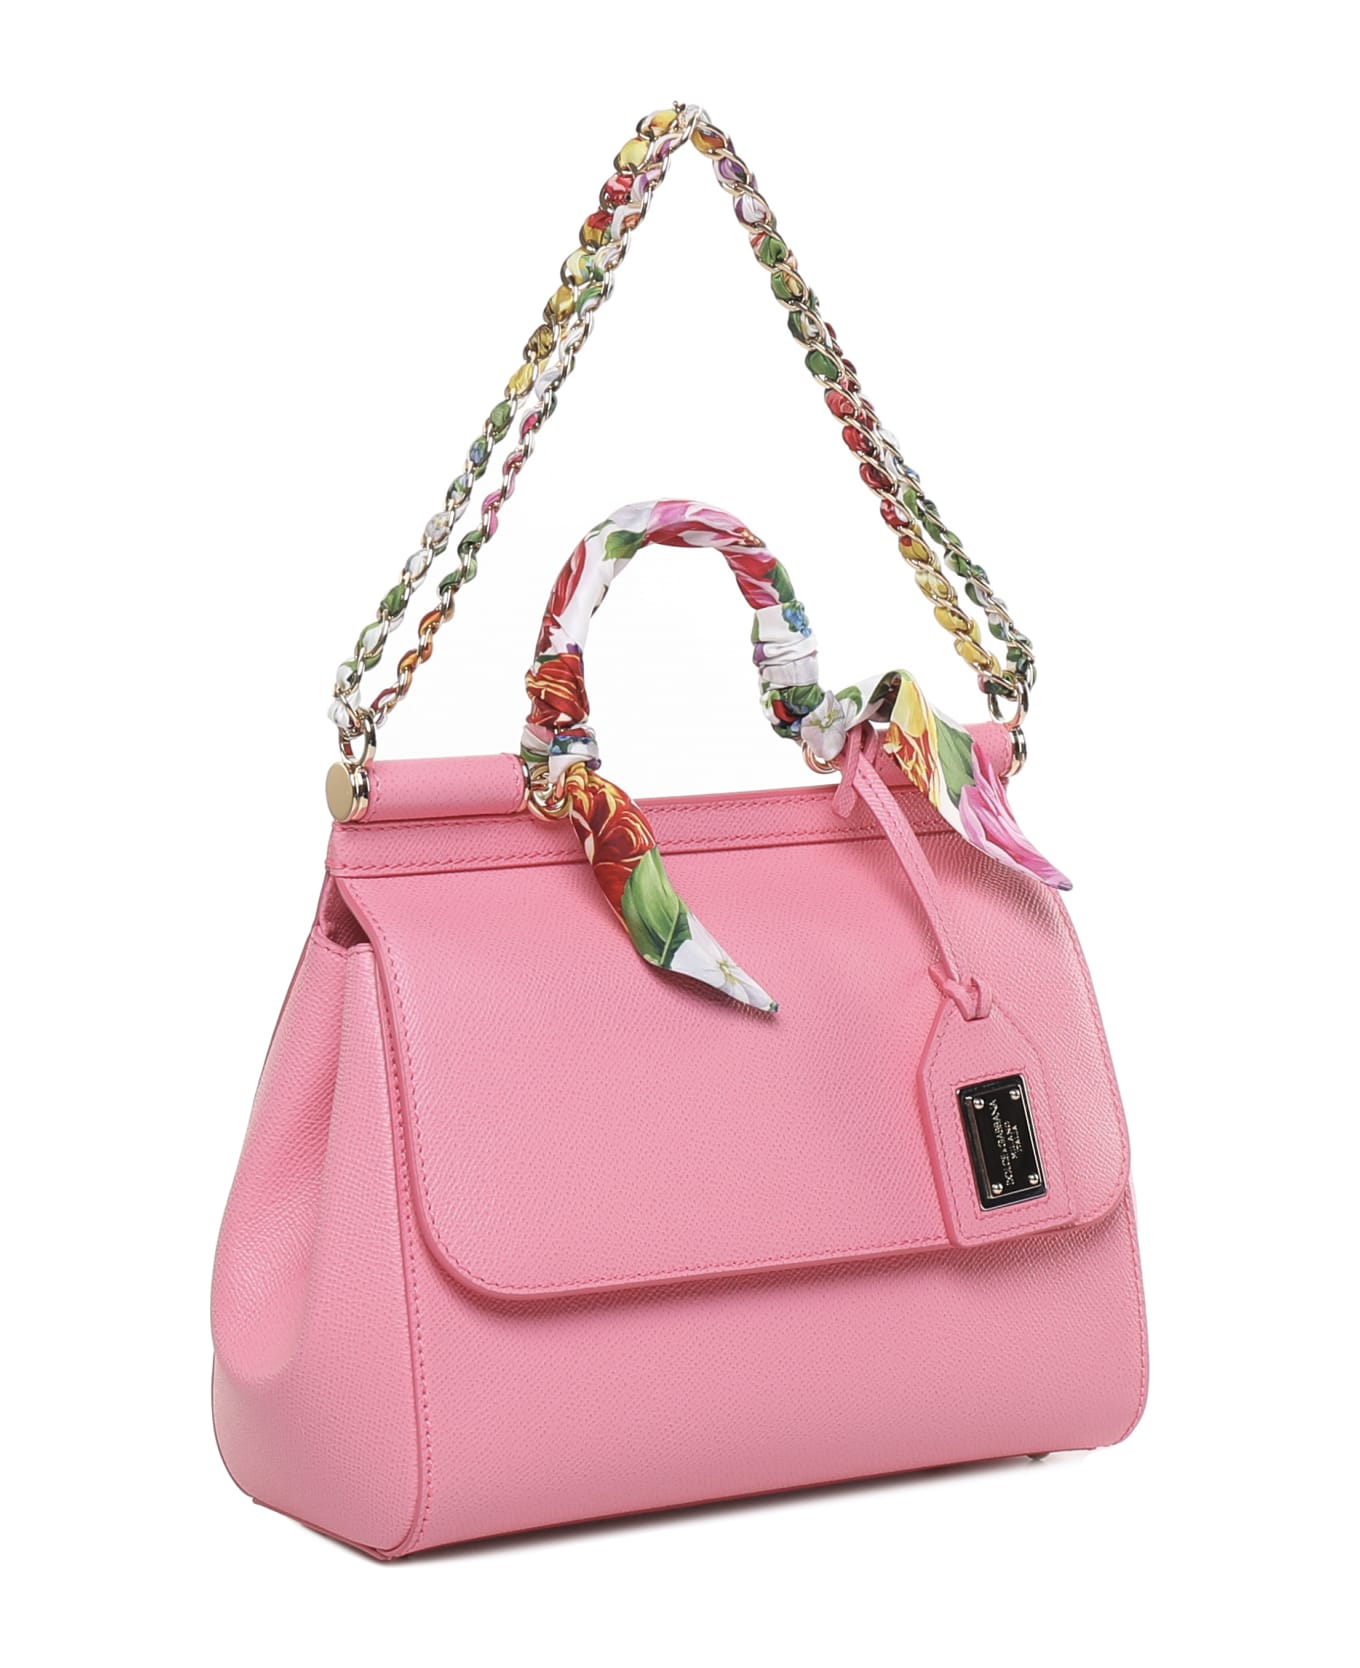 Dolce & Gabbana Sicily Bag In Calfskin - Rosa